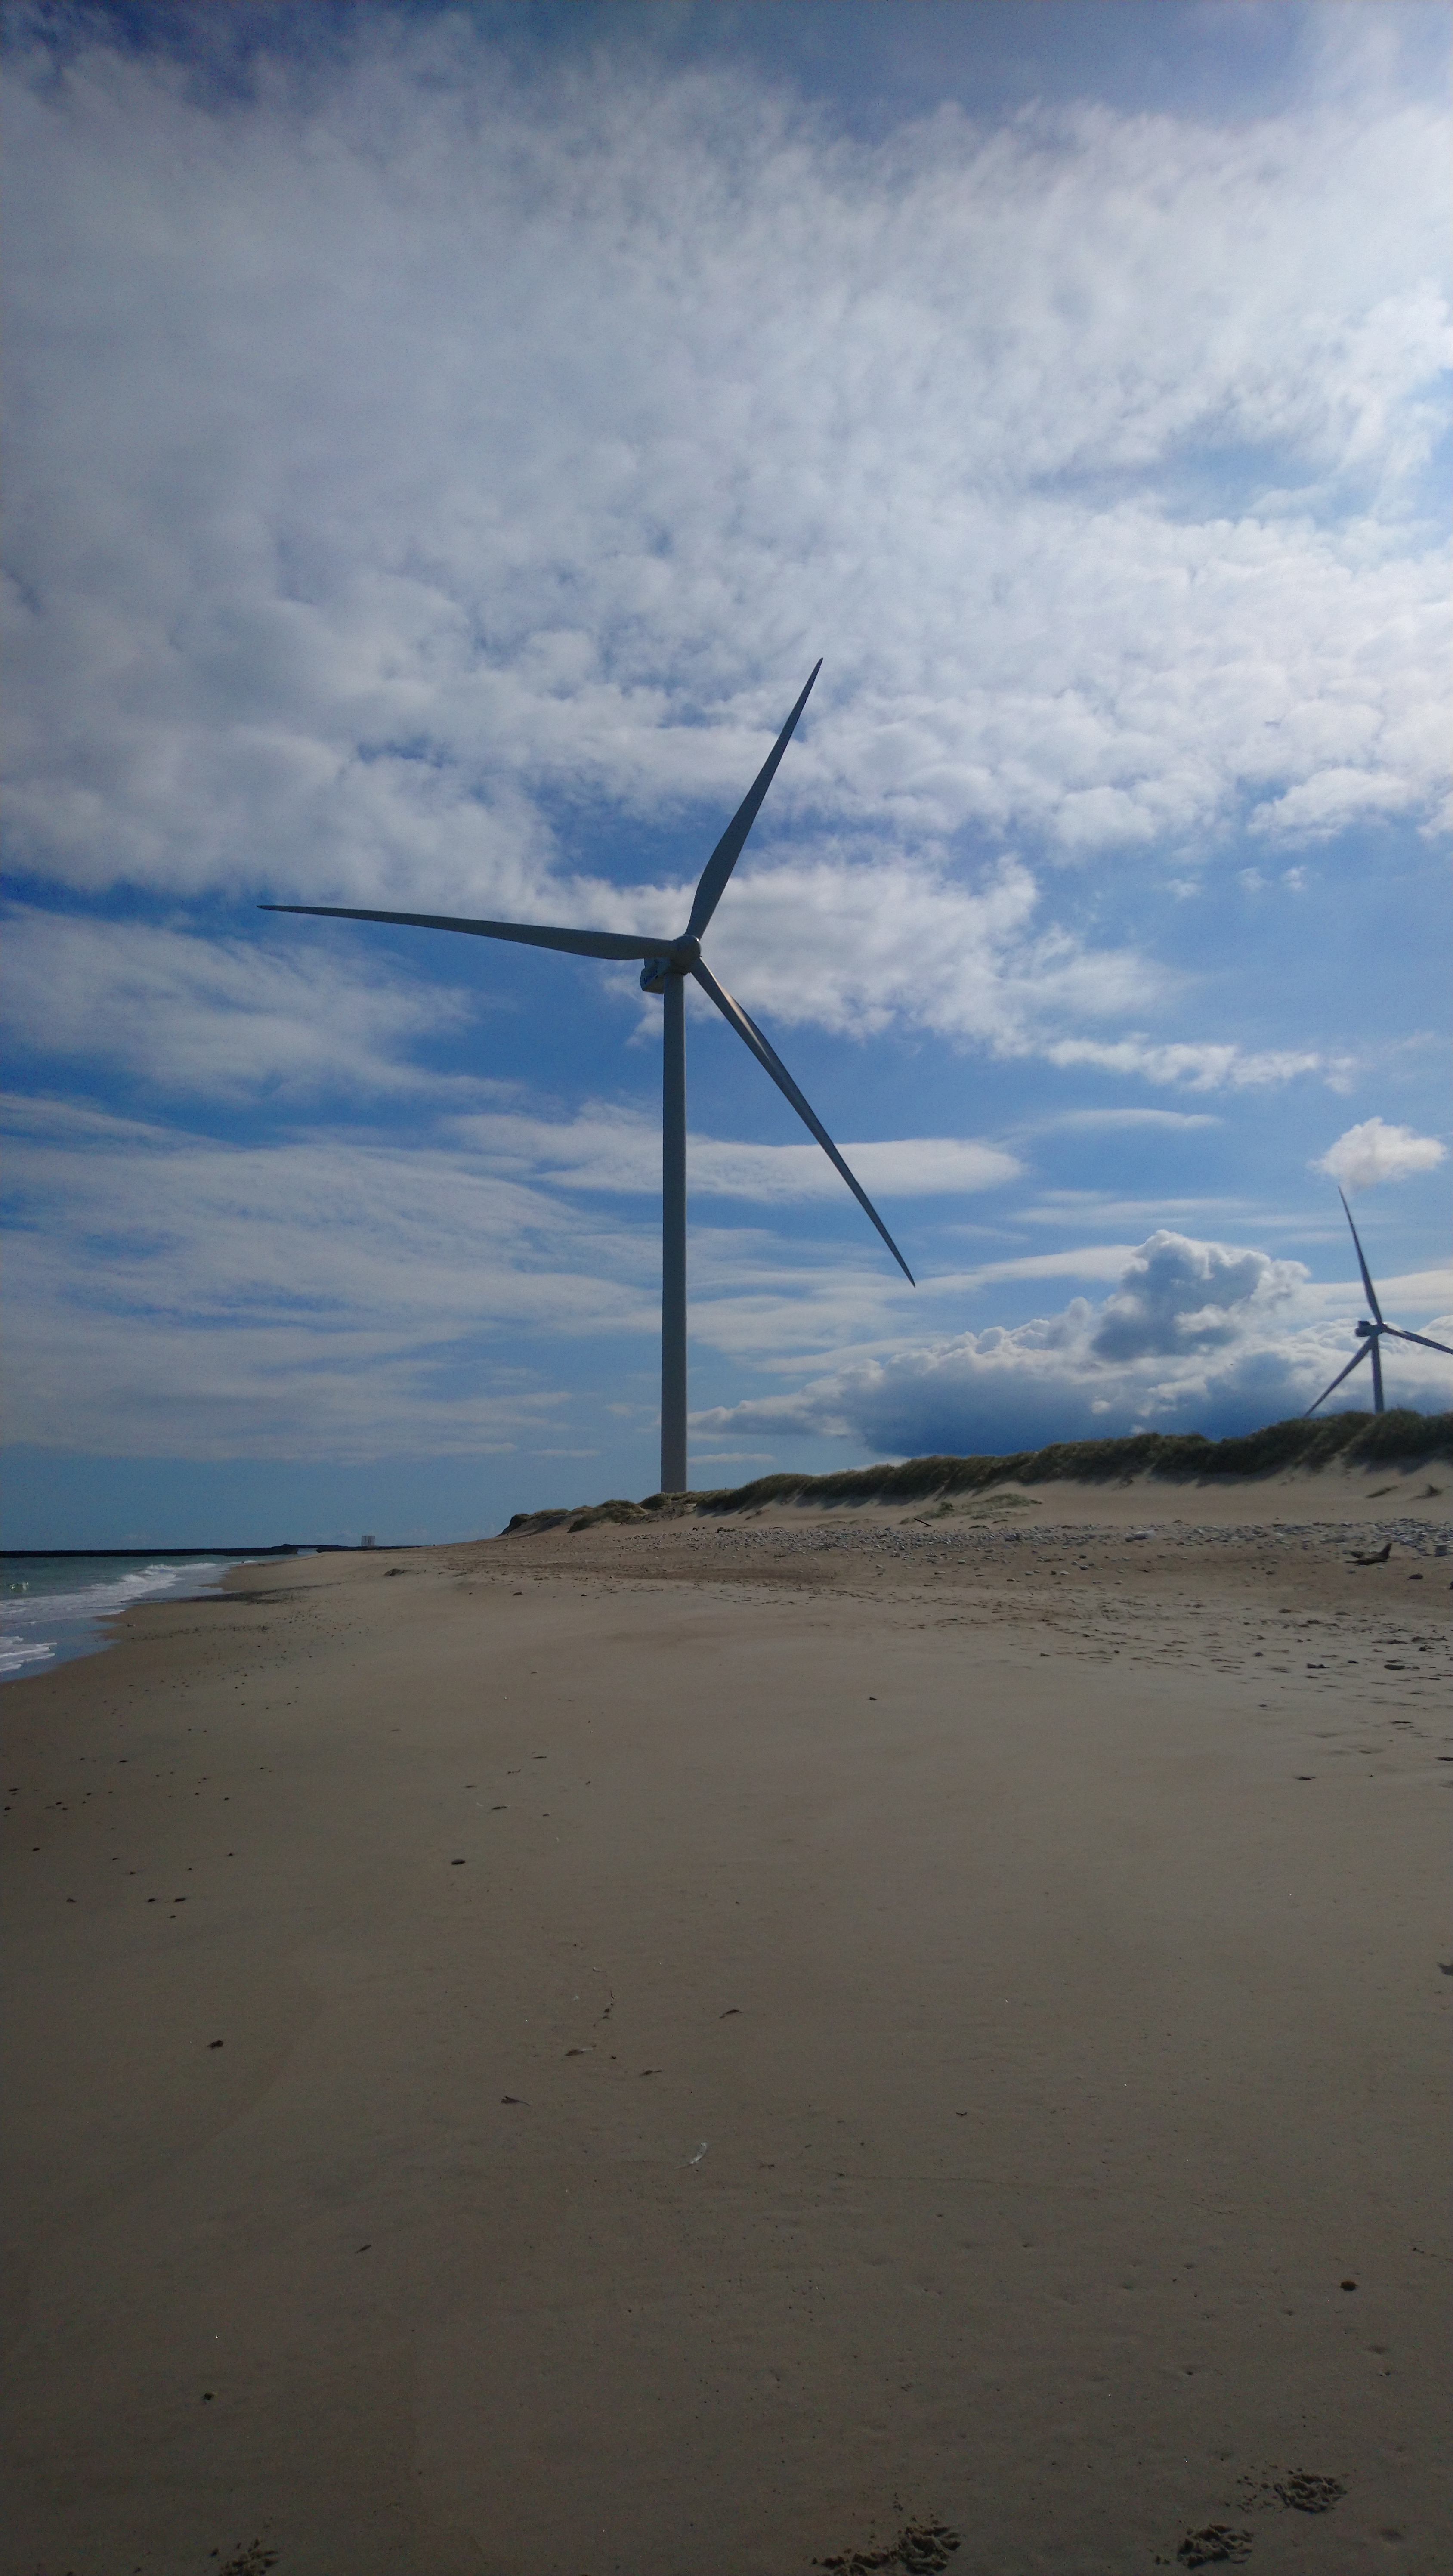 Large wind turbine